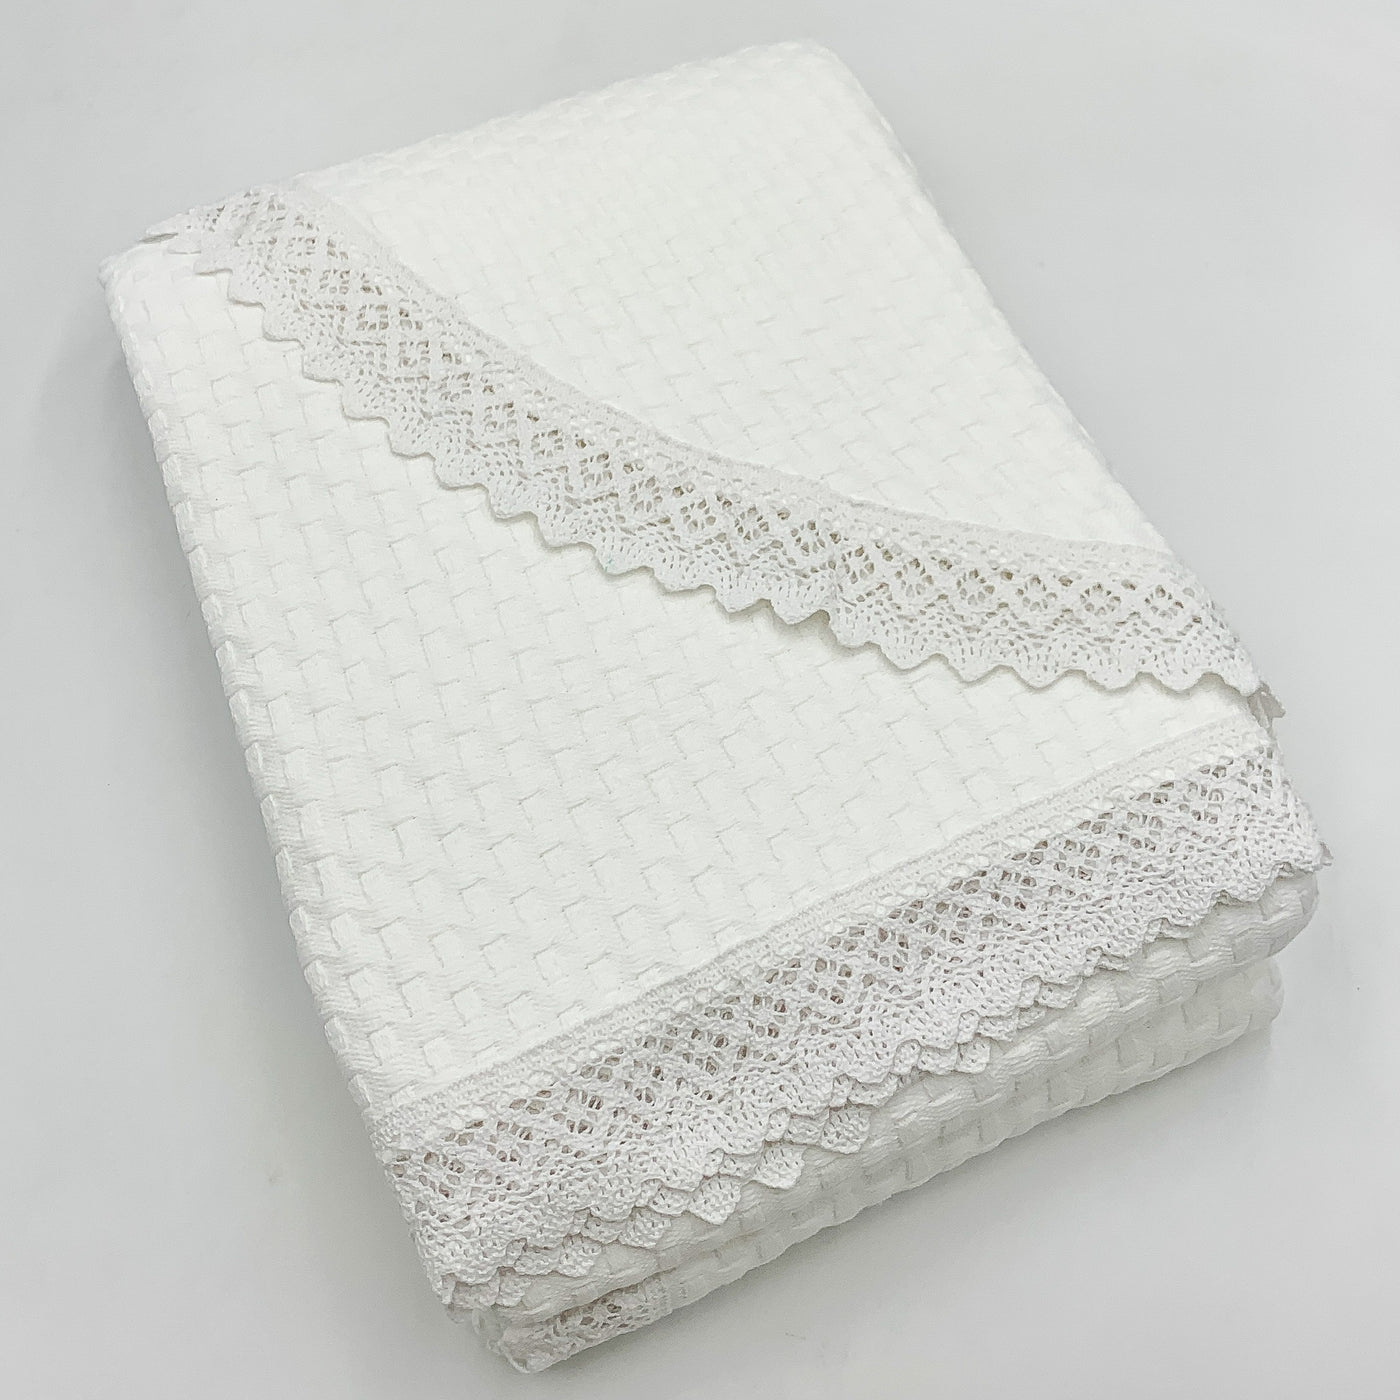 Textil Colchas Fibras naturales Blanco